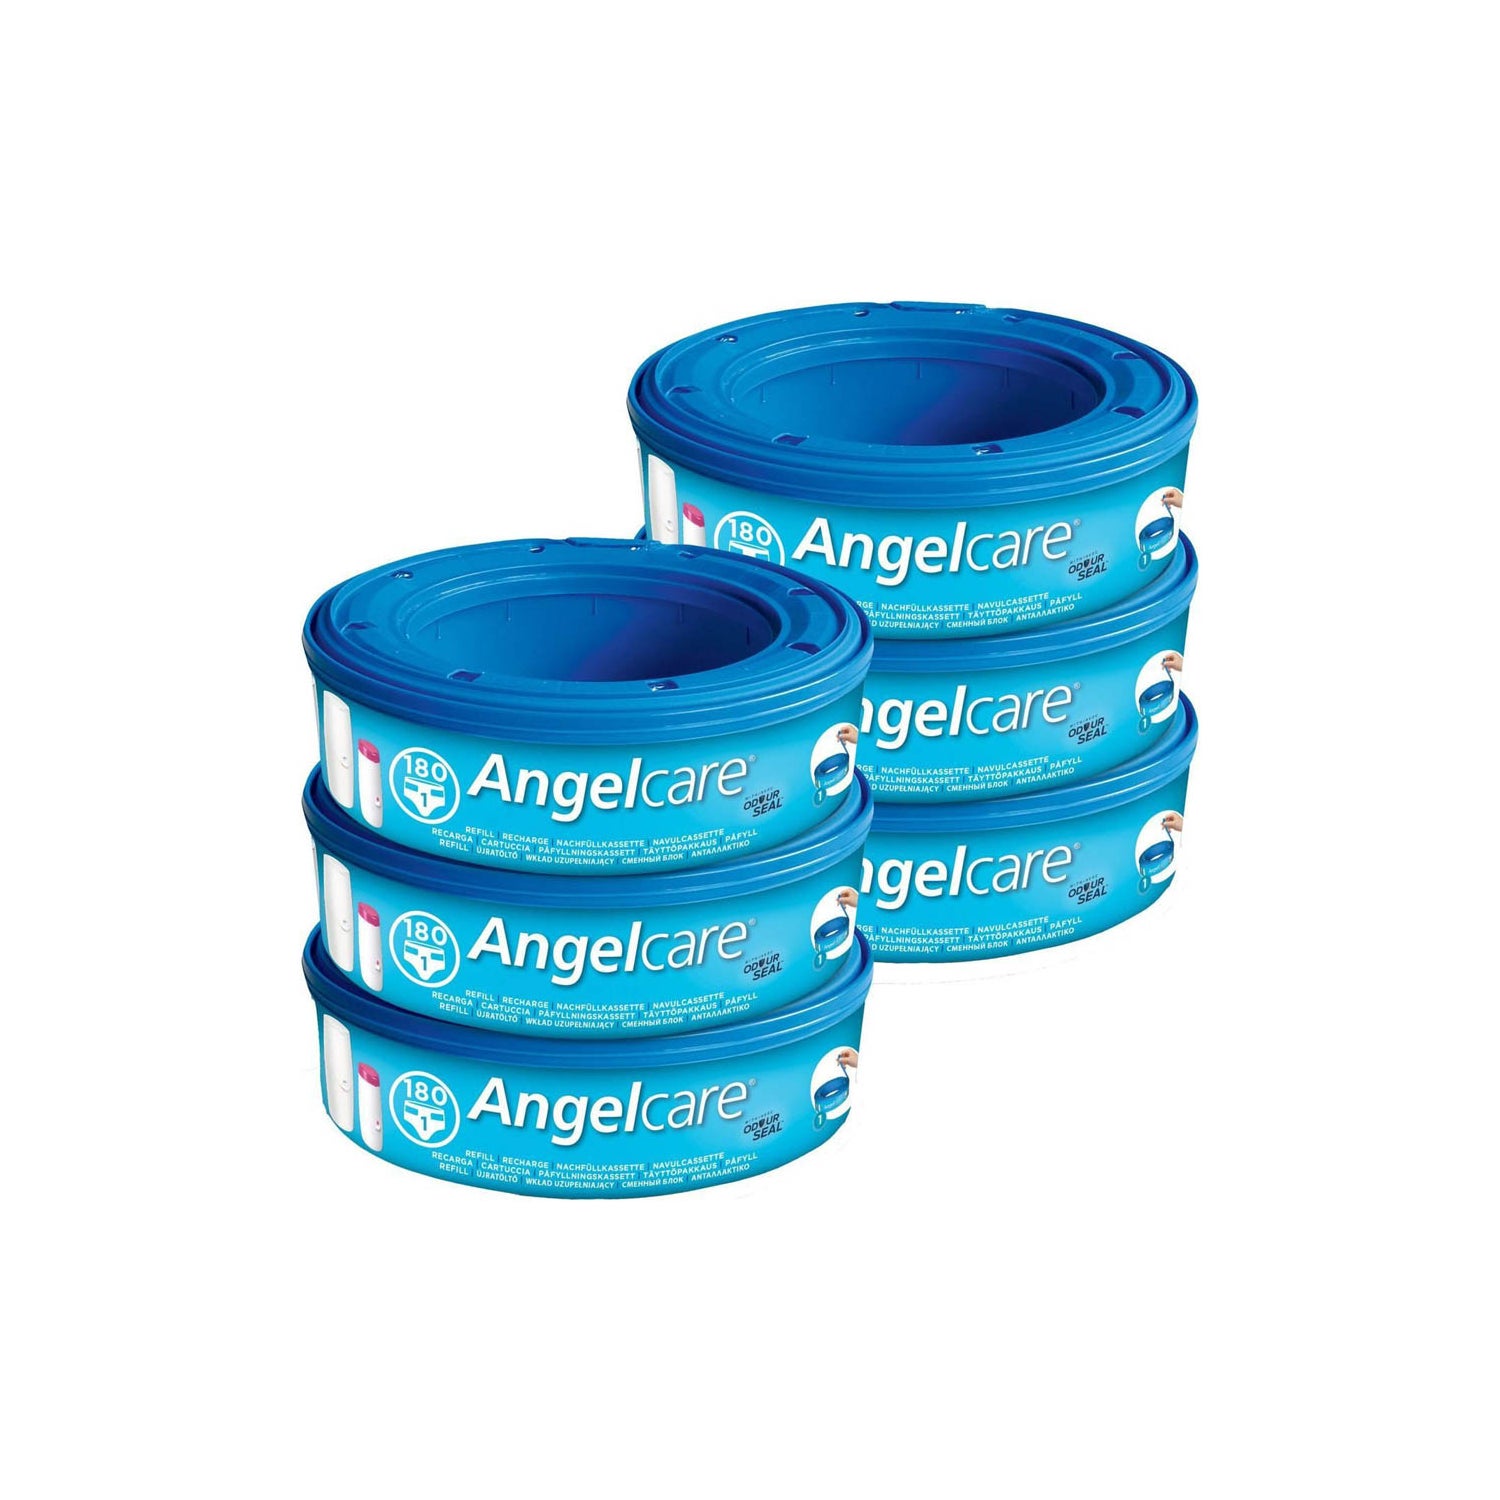 Comprar productos Angelcare online